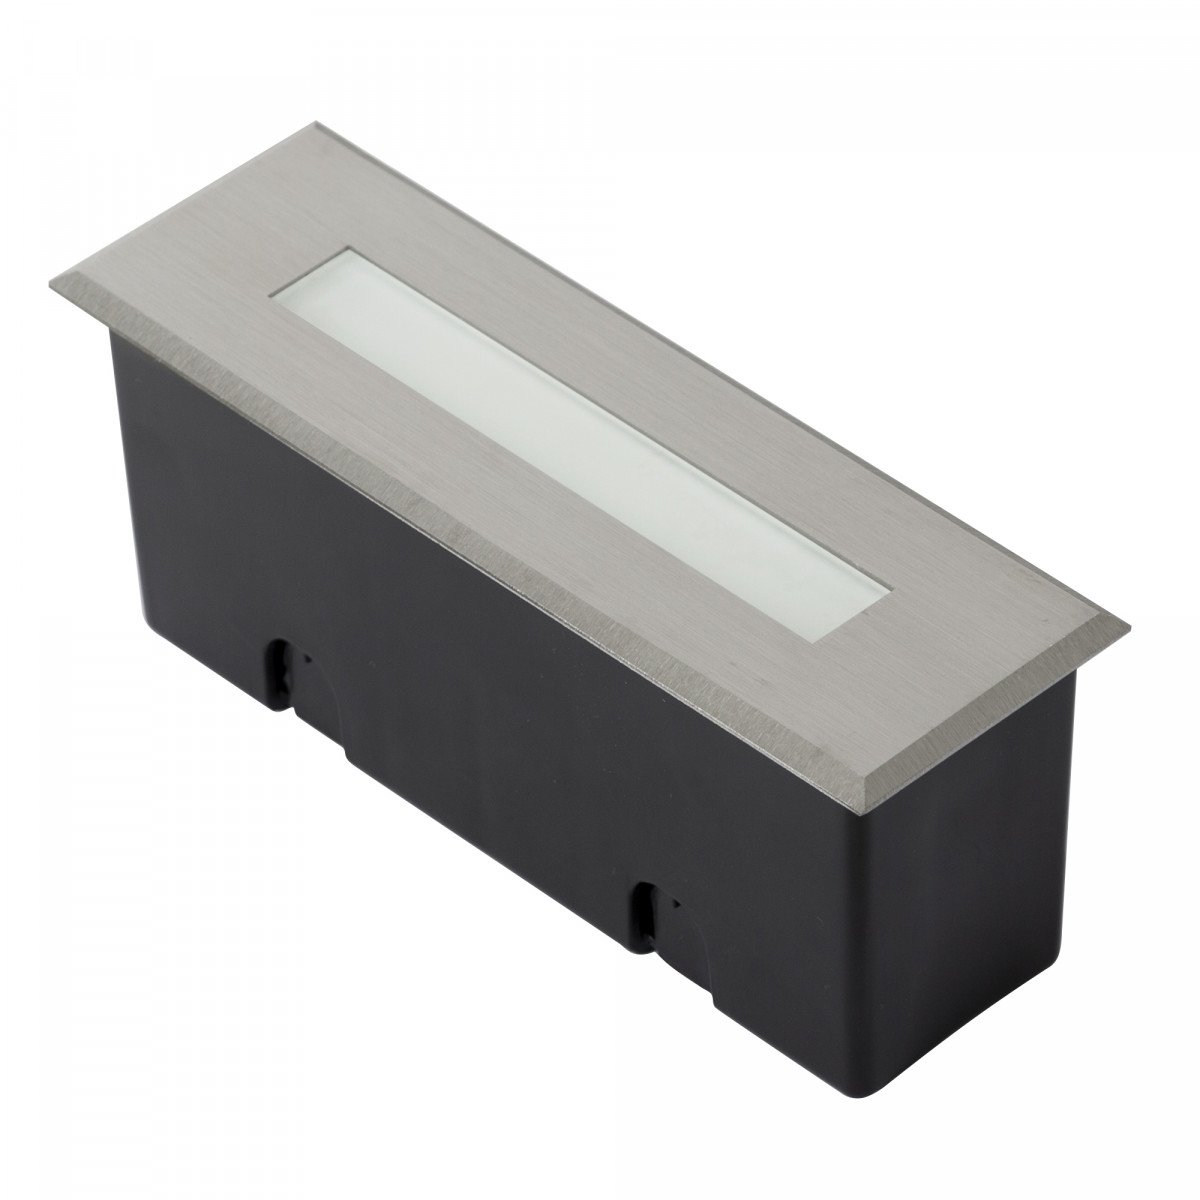 Wandeinbauleuchte Element 2 XS ais Edelstahl mit eingebauter LED für Innen und Außen. 